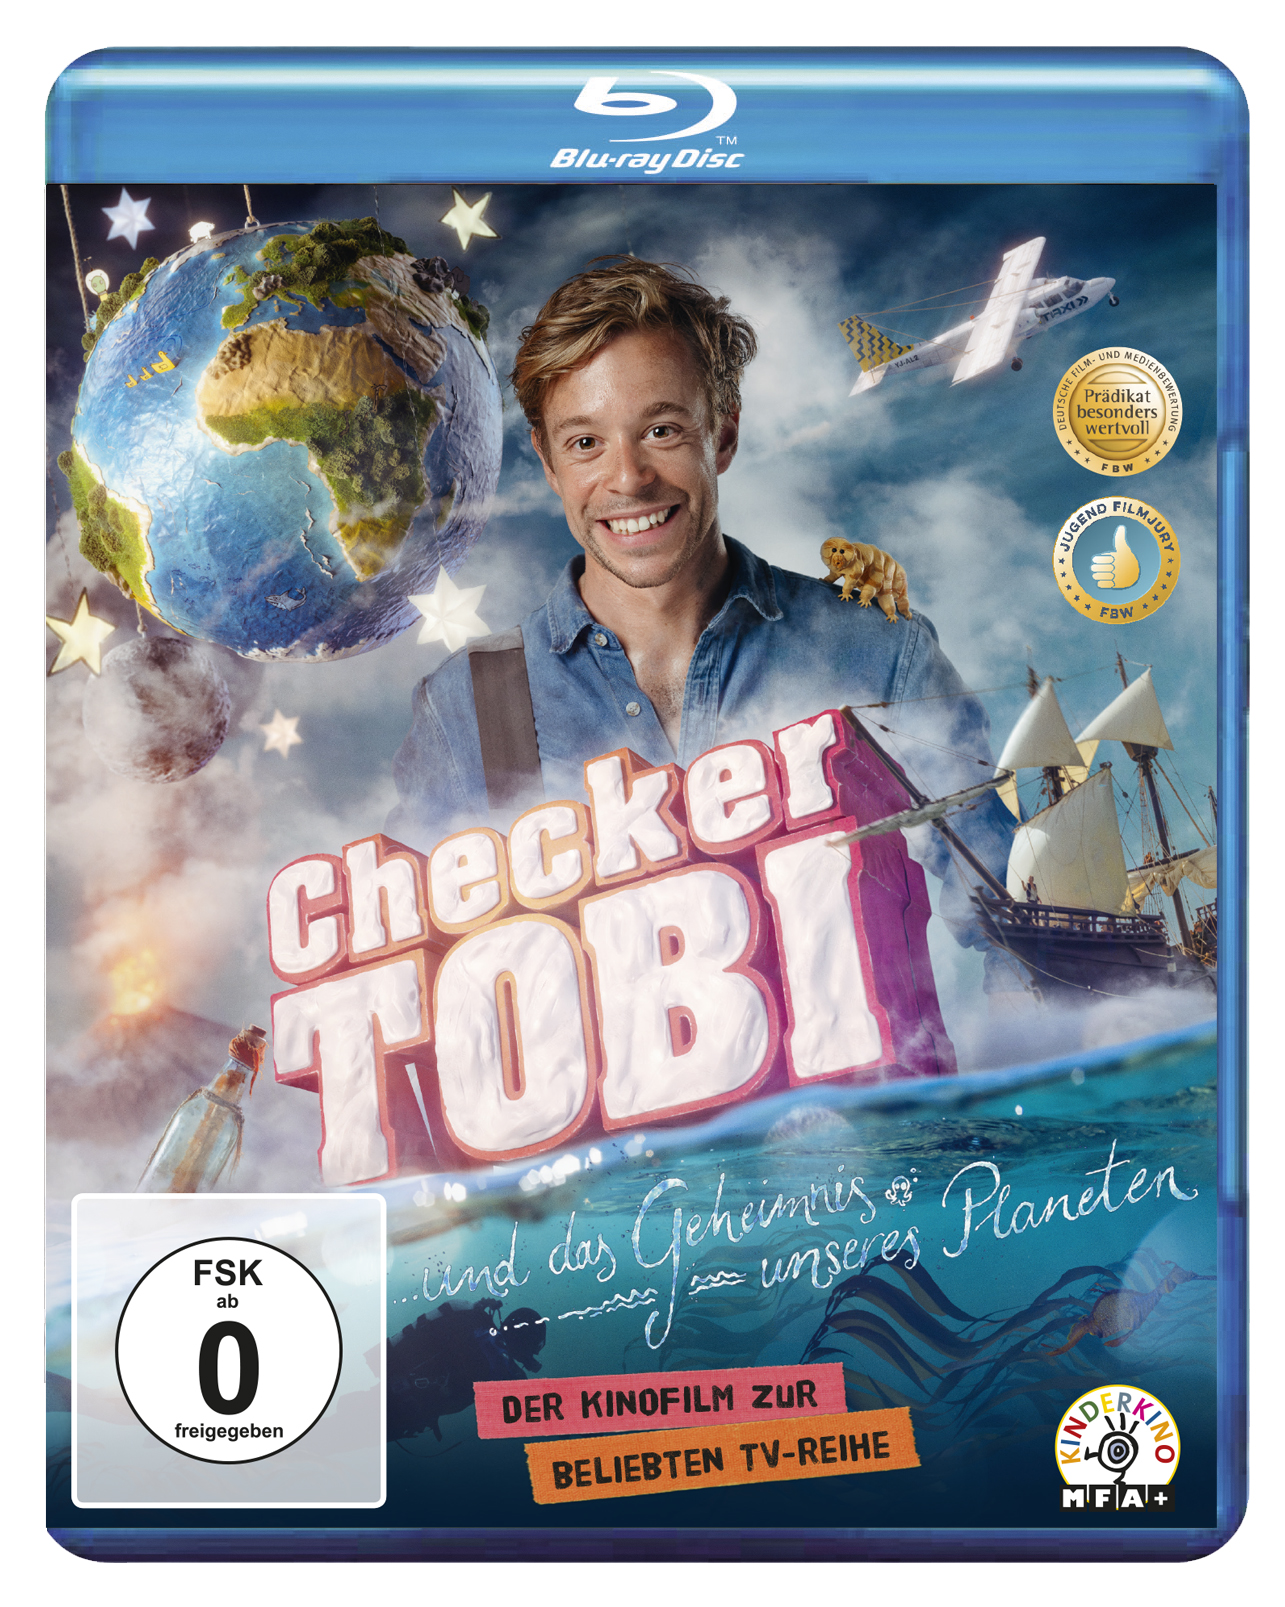 Checker Tobi unseres Planeten Geheimnis das und Blu-ray